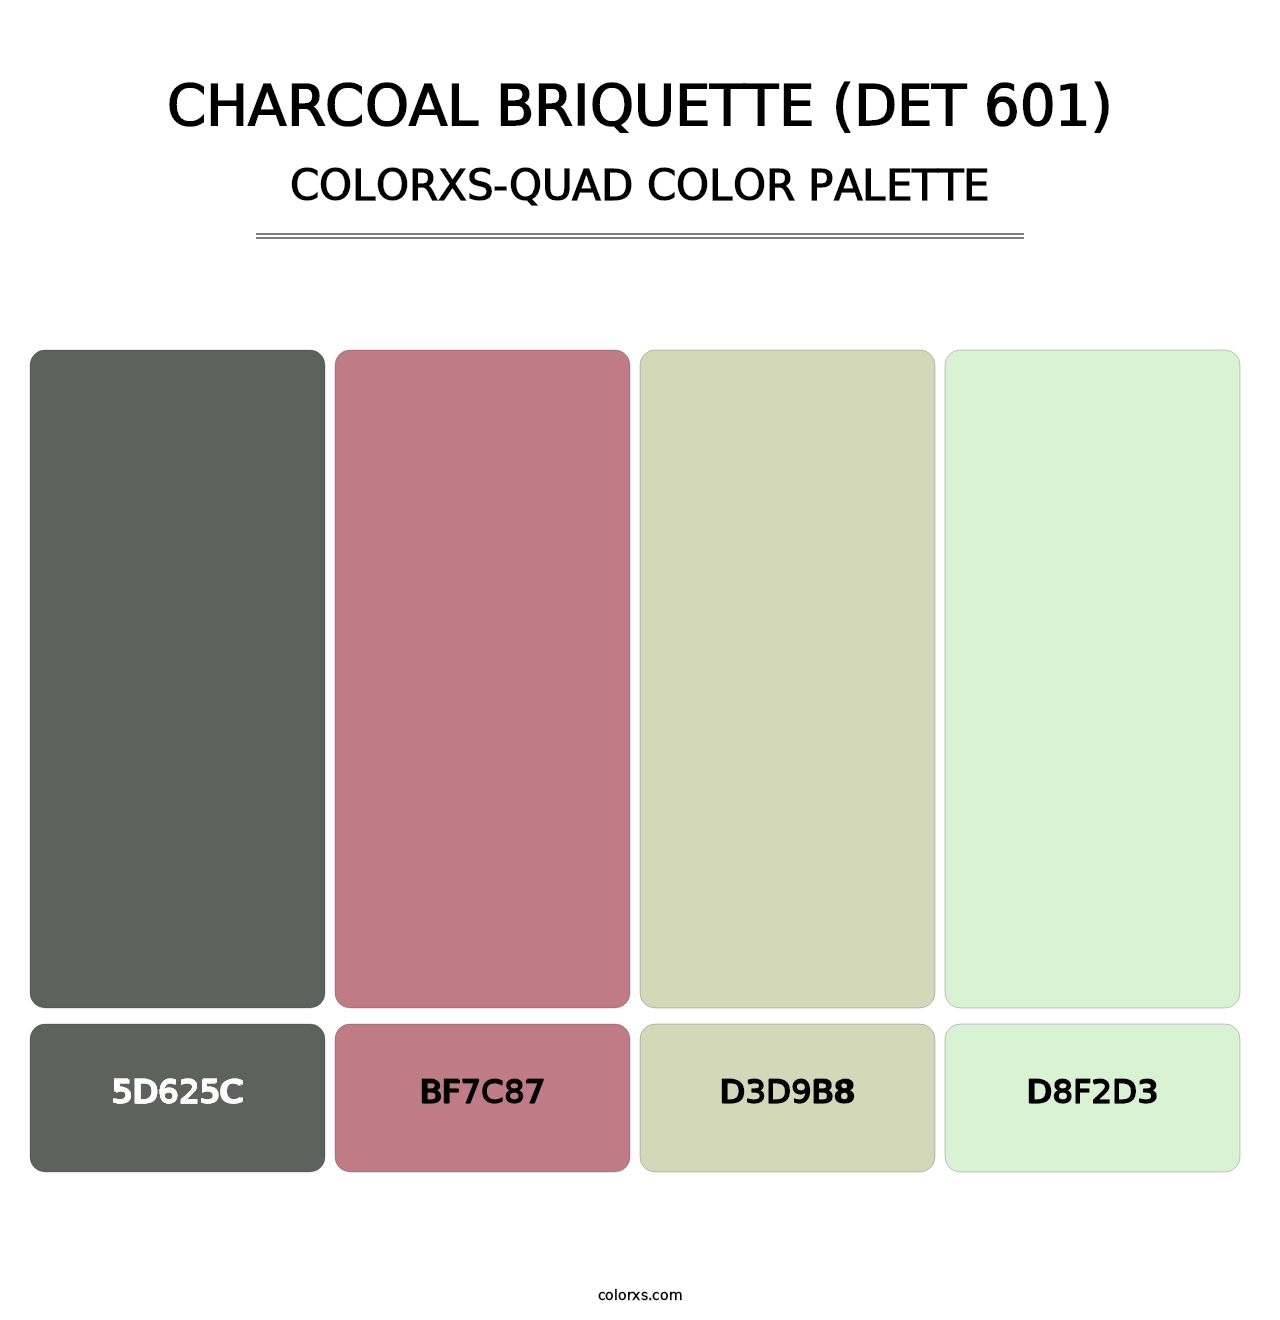 Charcoal Briquette (DET 601) - Colorxs Quad Palette